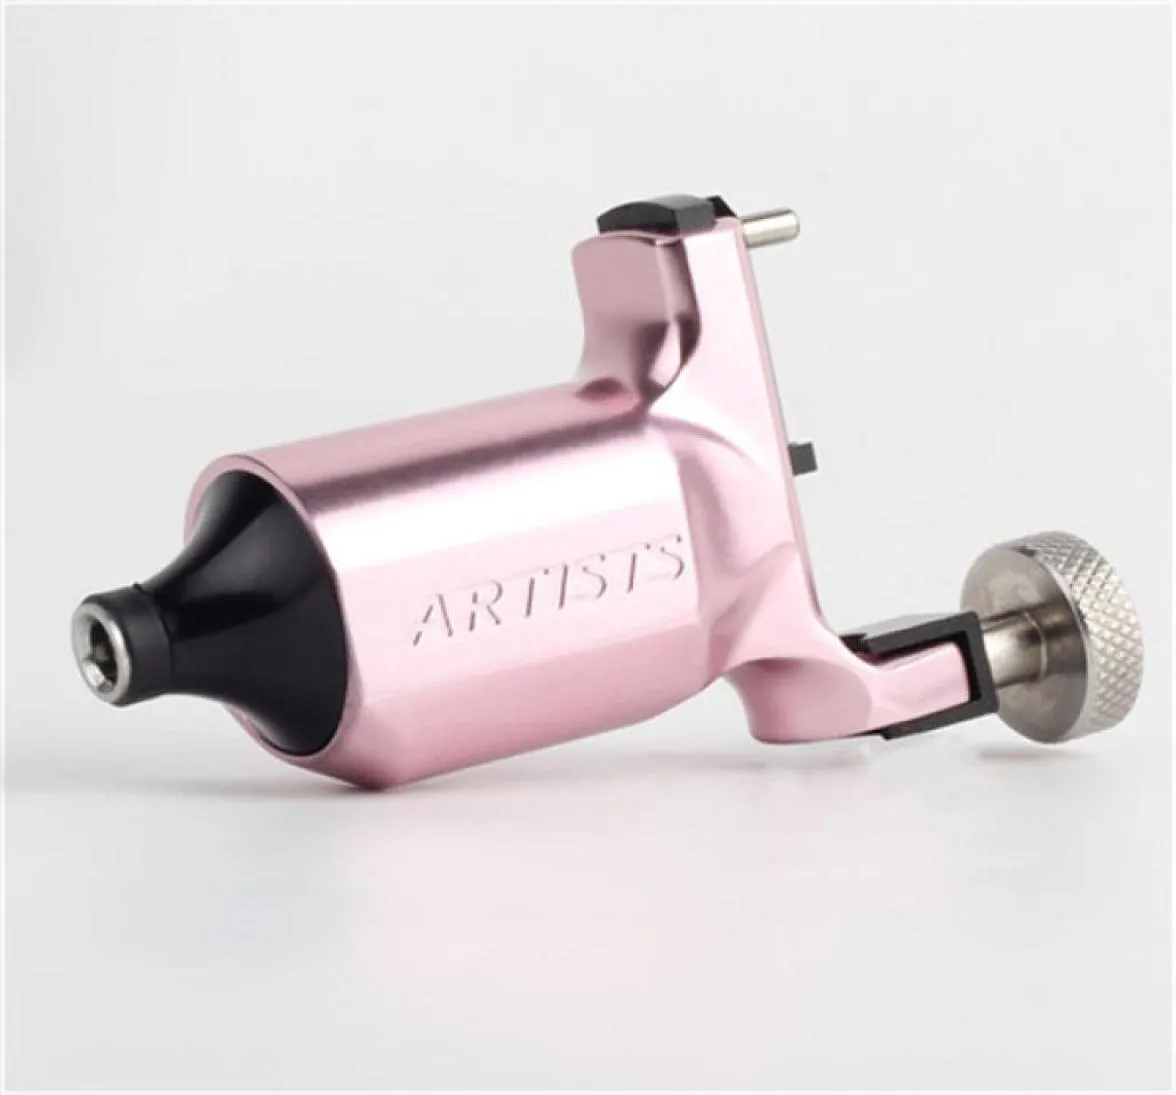 Künstler Rotary Pink Tattoo Machine Swiss Motor Liner Shader -Versorgung mit Rotary Tattoo Gun für Tätowierer für 8952402